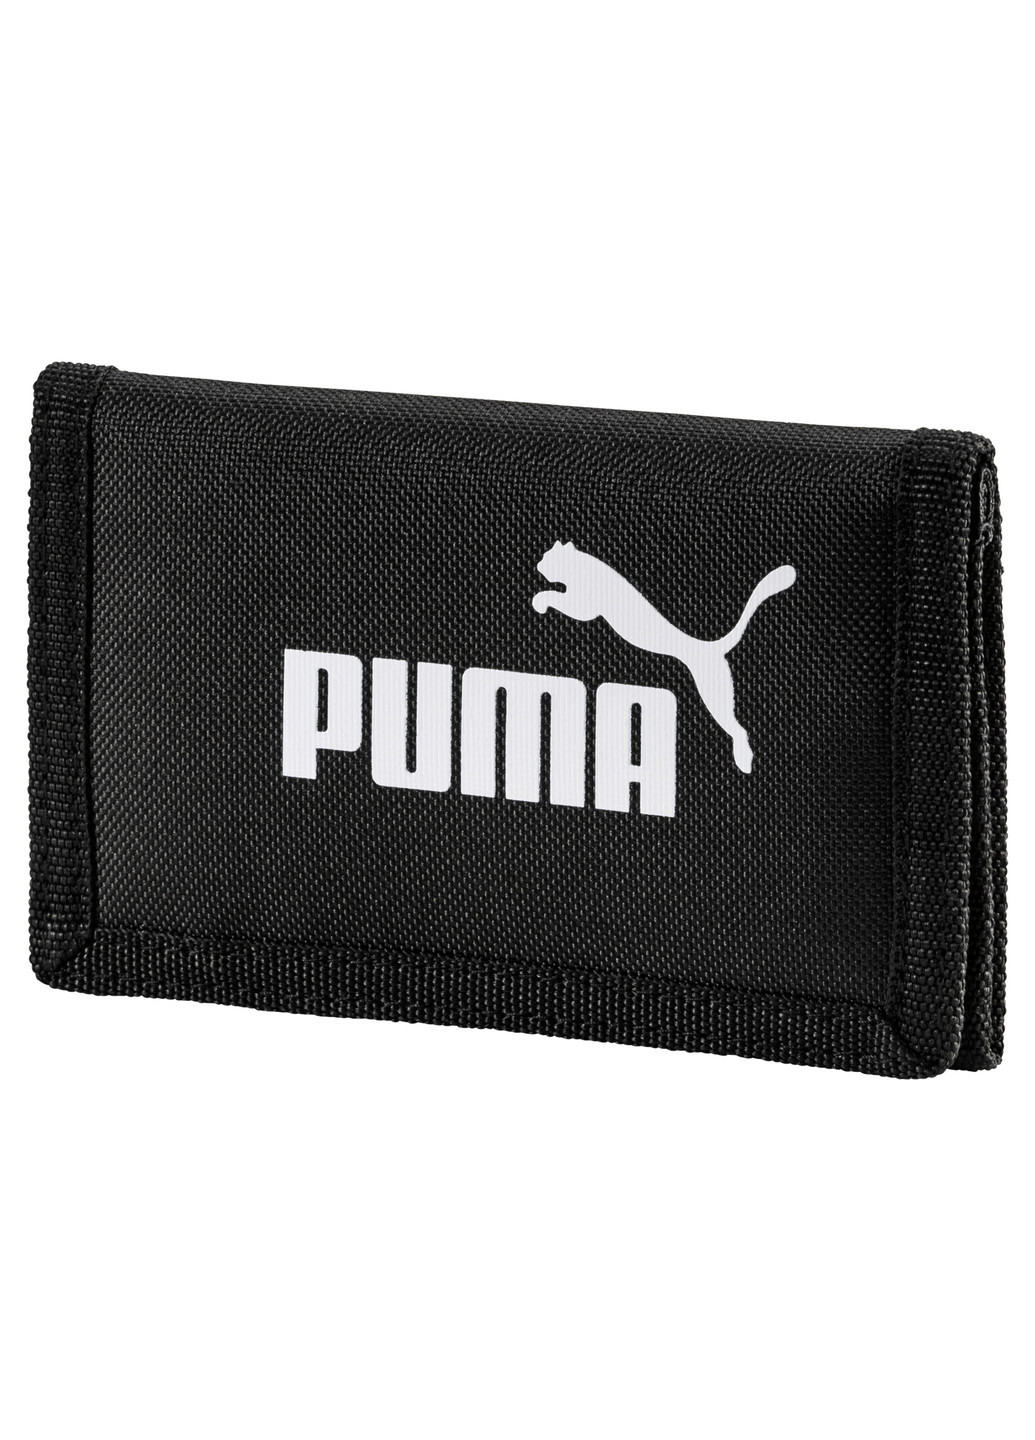 Кошелек Phase Wallet Puma однотонный чёрный спортивный полиэстер